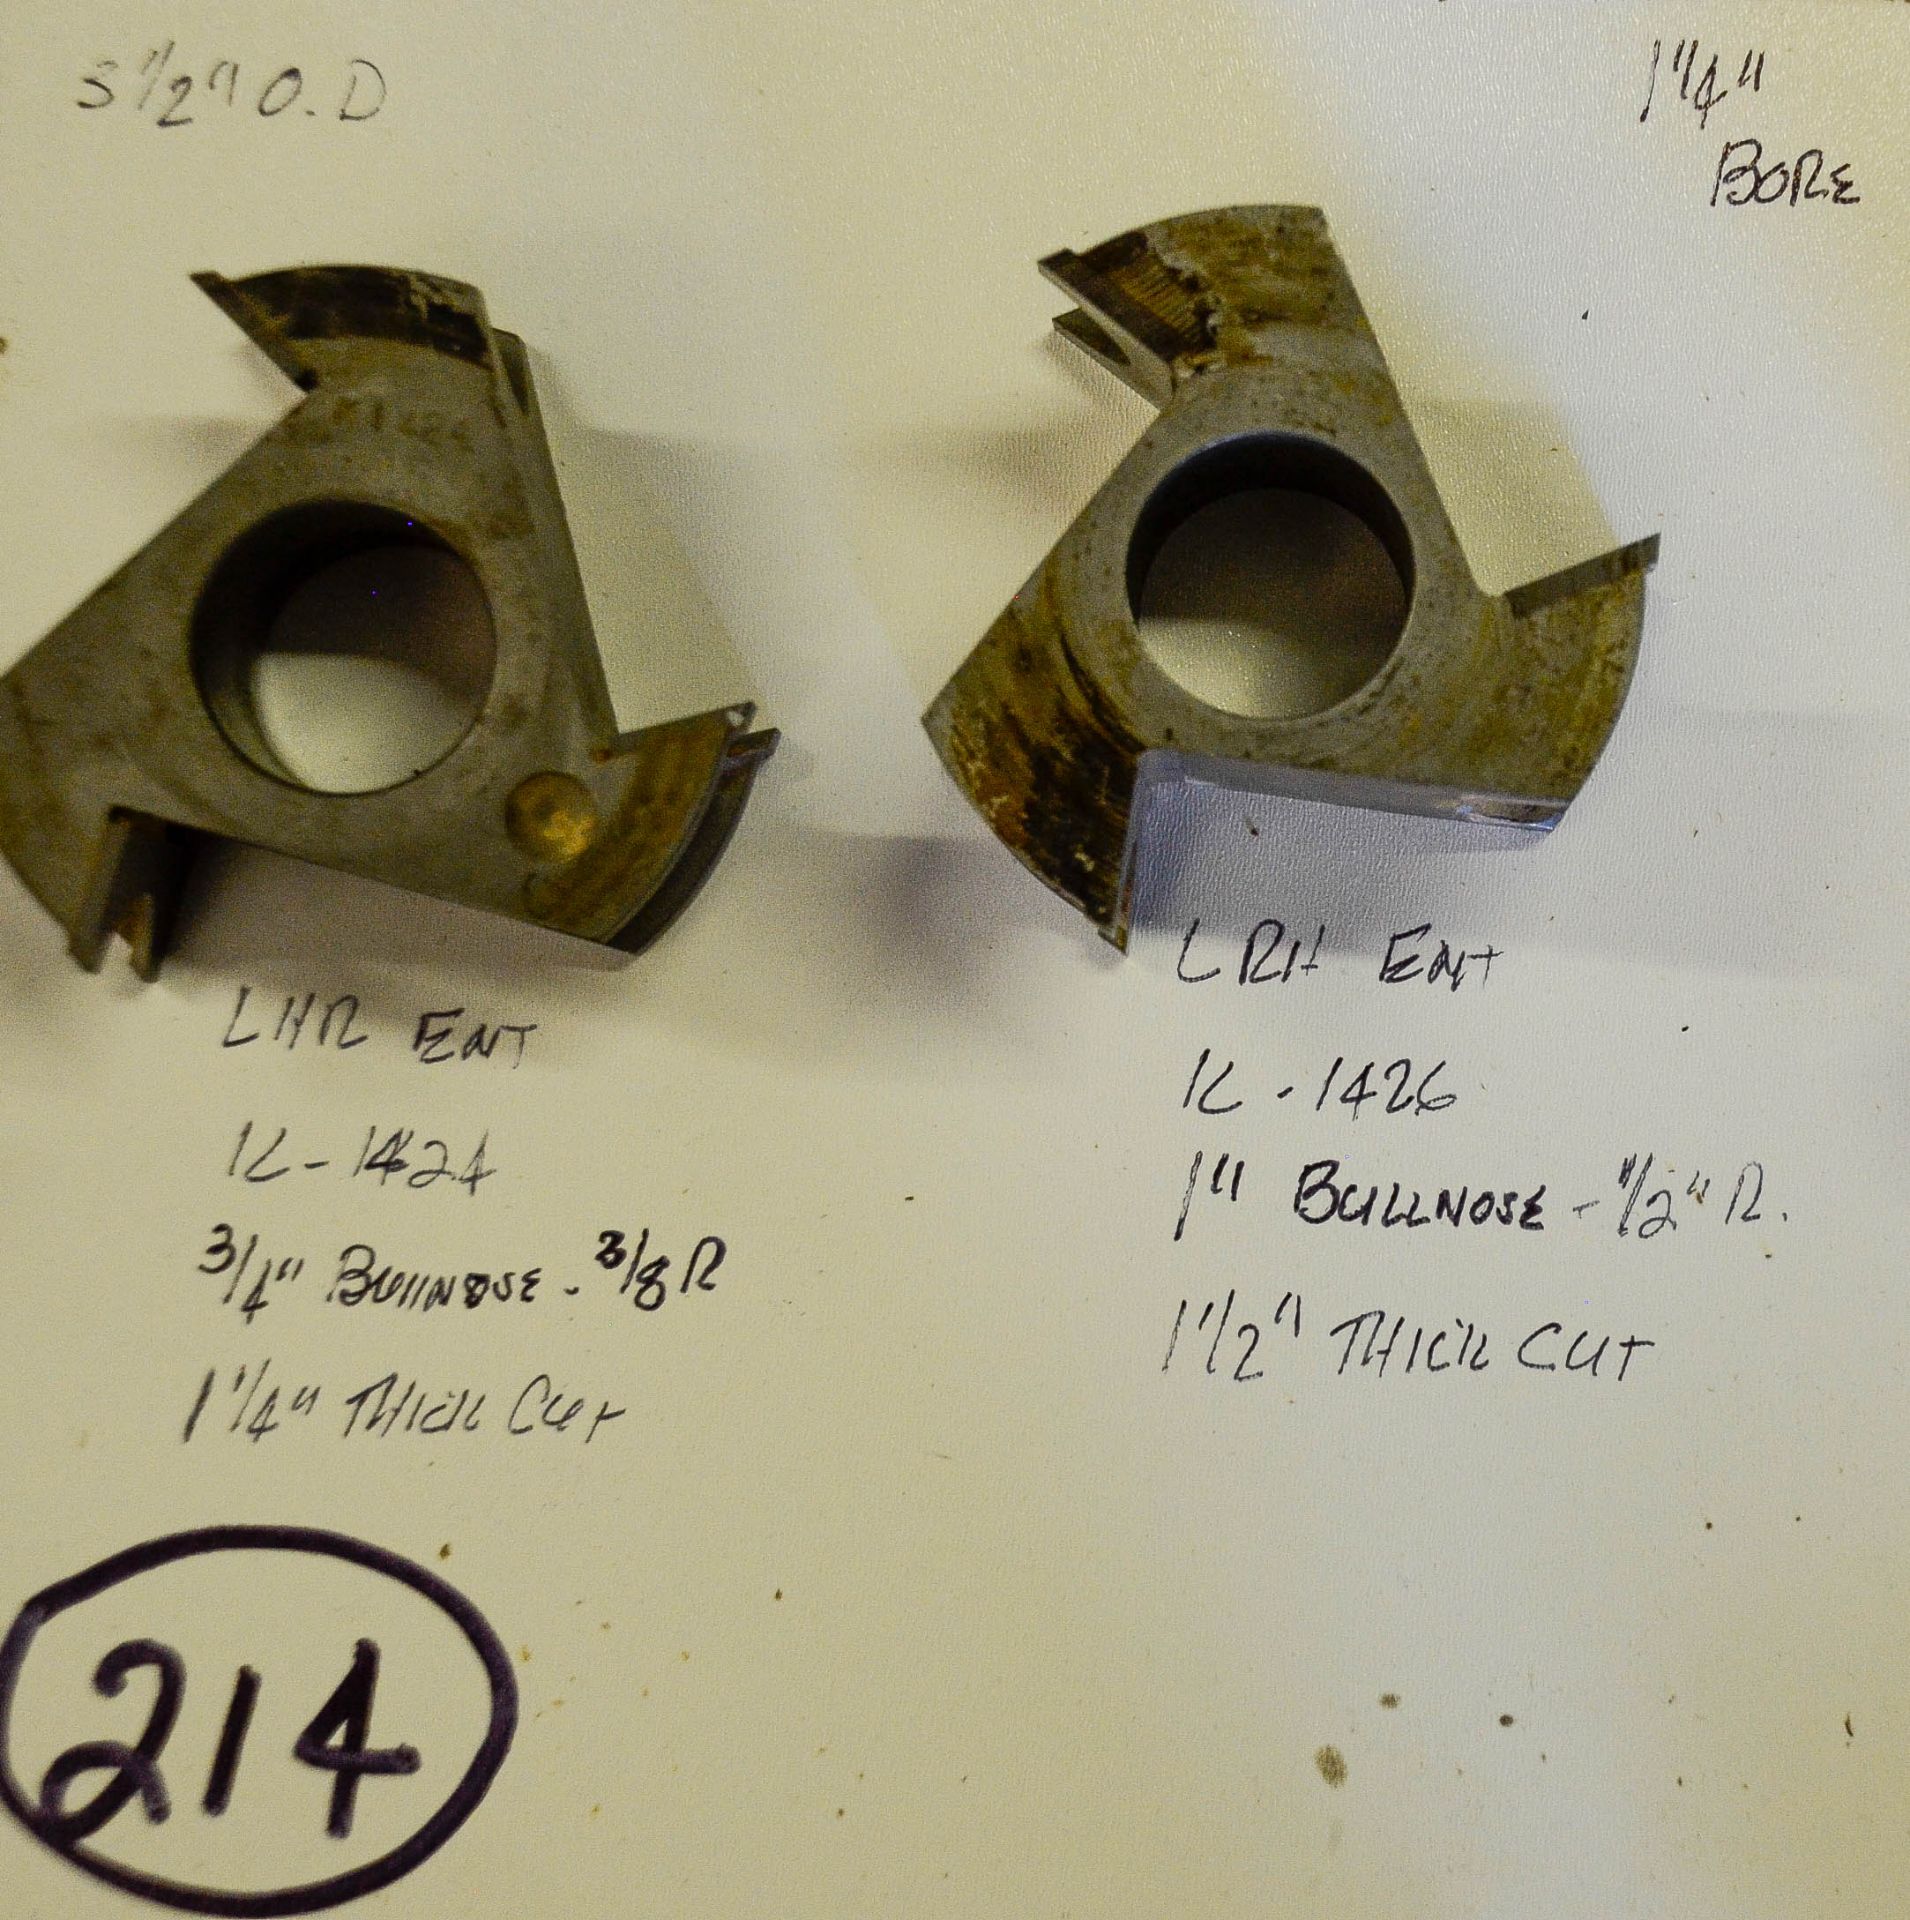 Shaper Cutter, (2) Cutters 3-1/2"+- Outside Diameter, 1-1/4" Bore: (1) L.R.H. ENT. K1424, 3/4" Bu